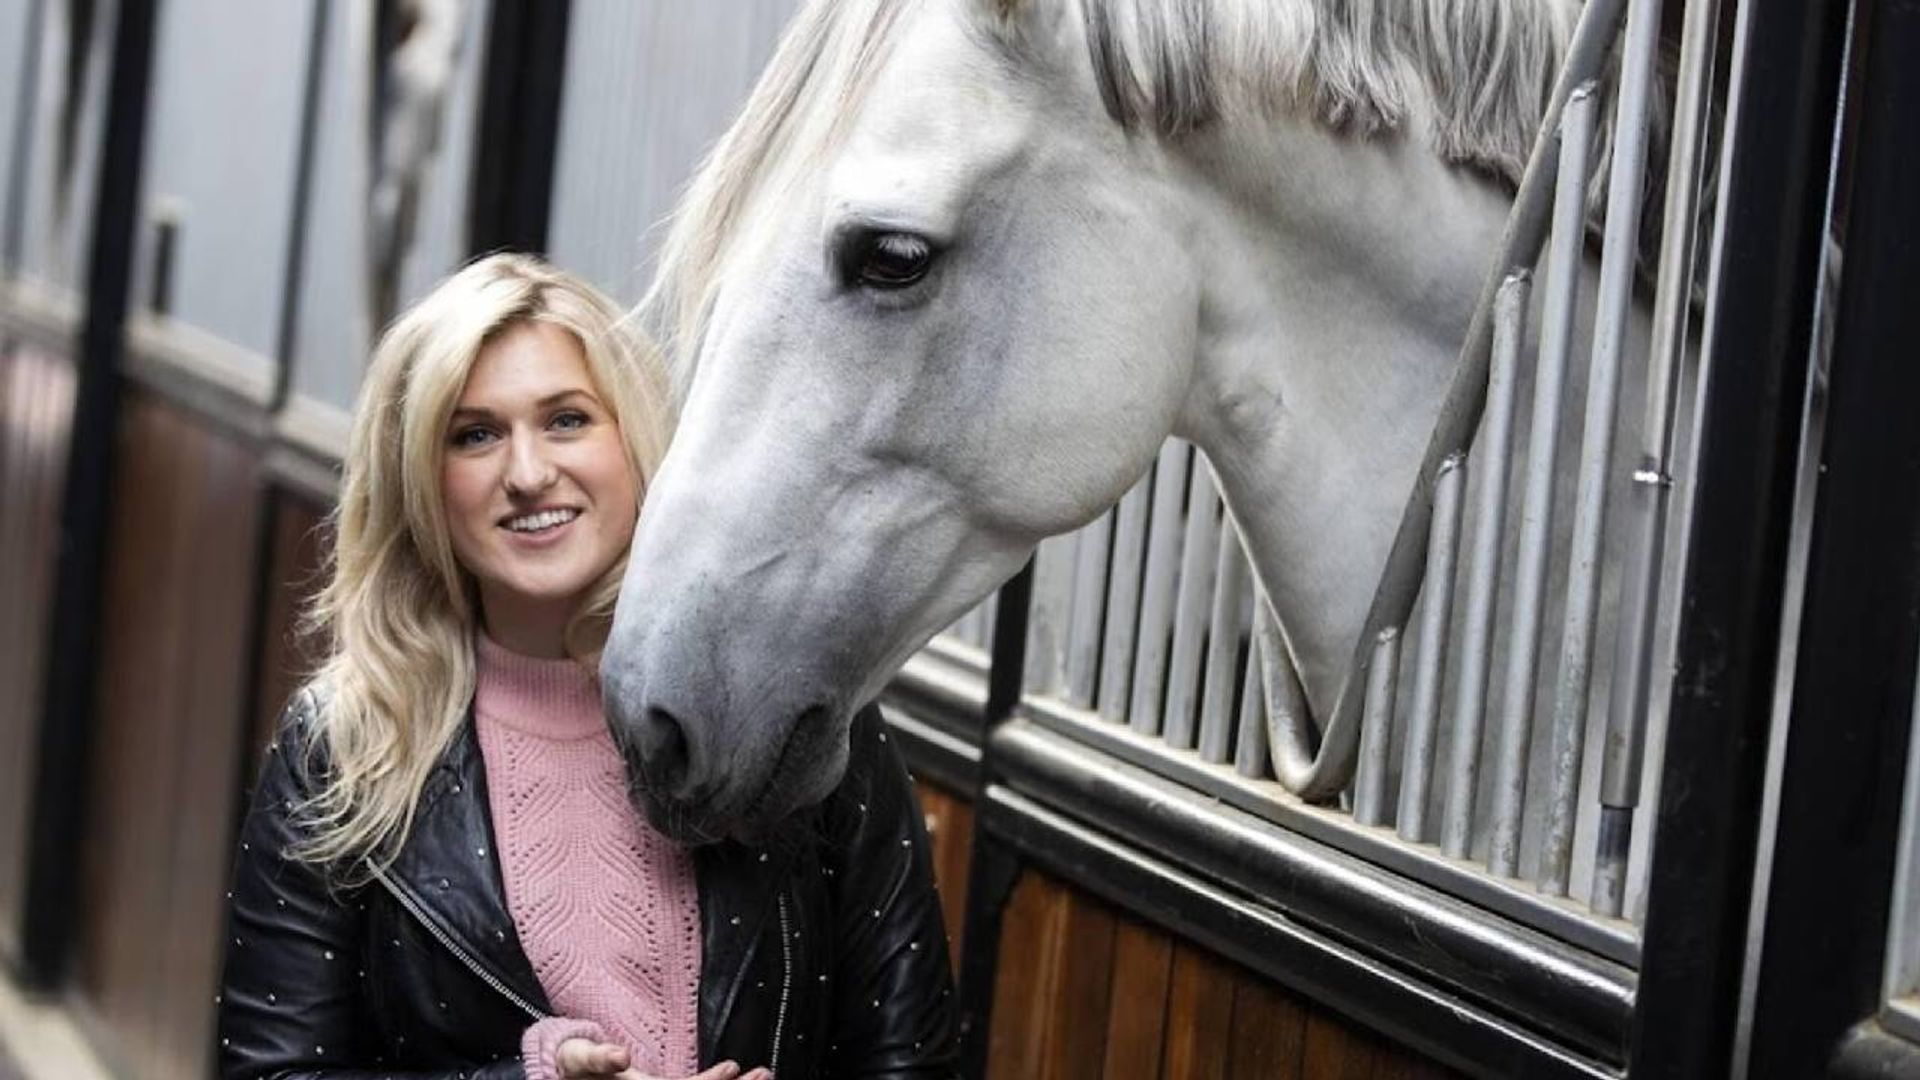 Britt Dekker trots op haar paard: 'weer een lief kindje gelukkig gemaakt'